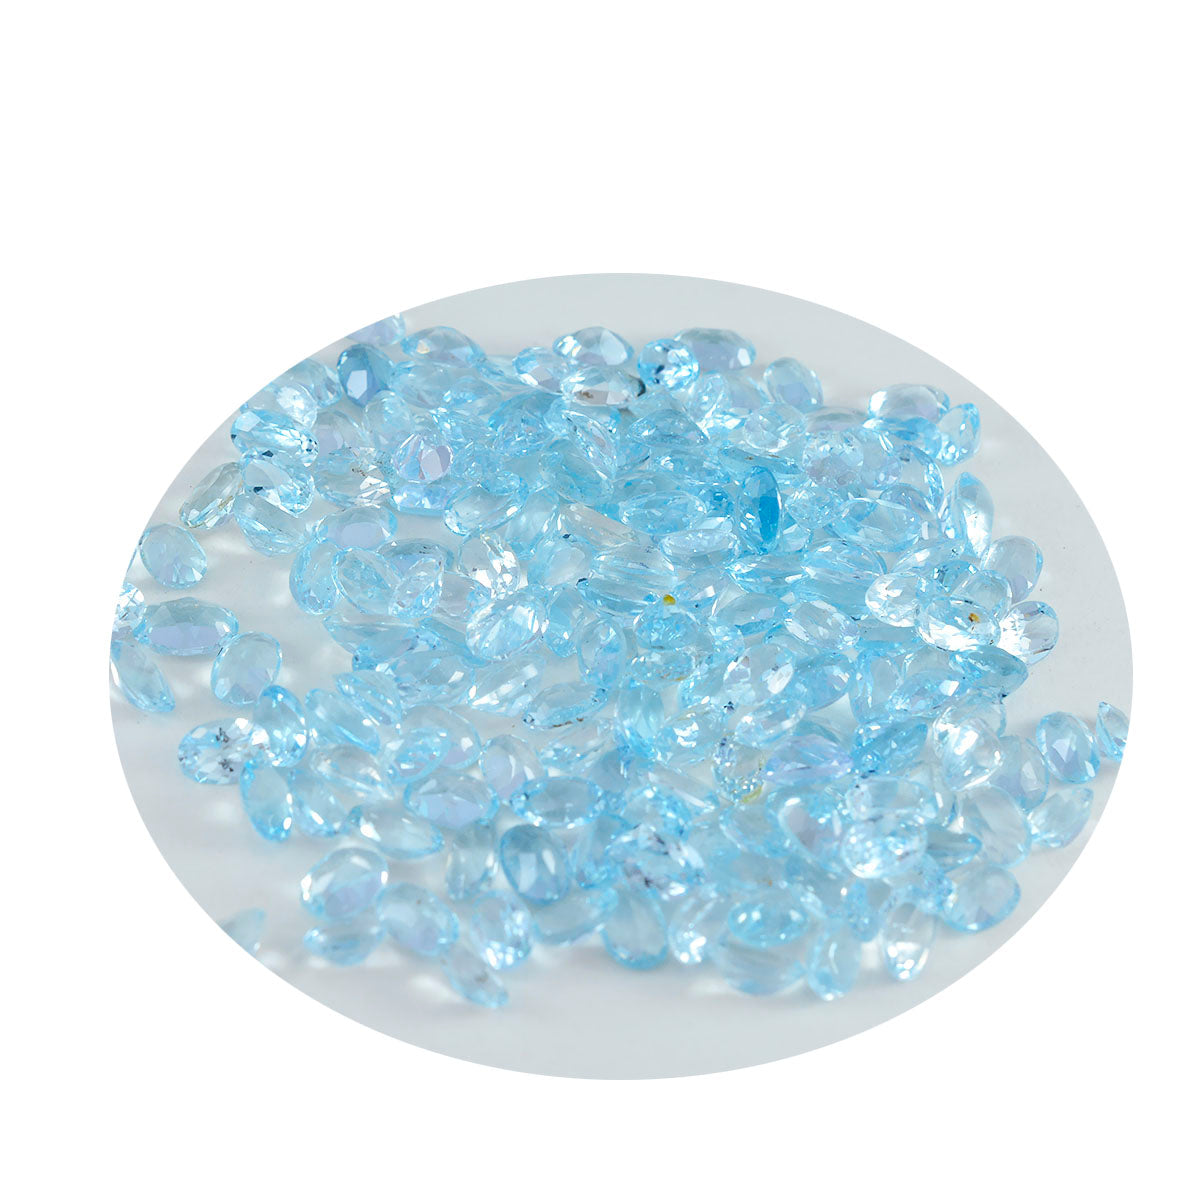 Riyogems 1pc topaze bleue naturelle facettée 3x5mm forme ovale aaa qualité gemme